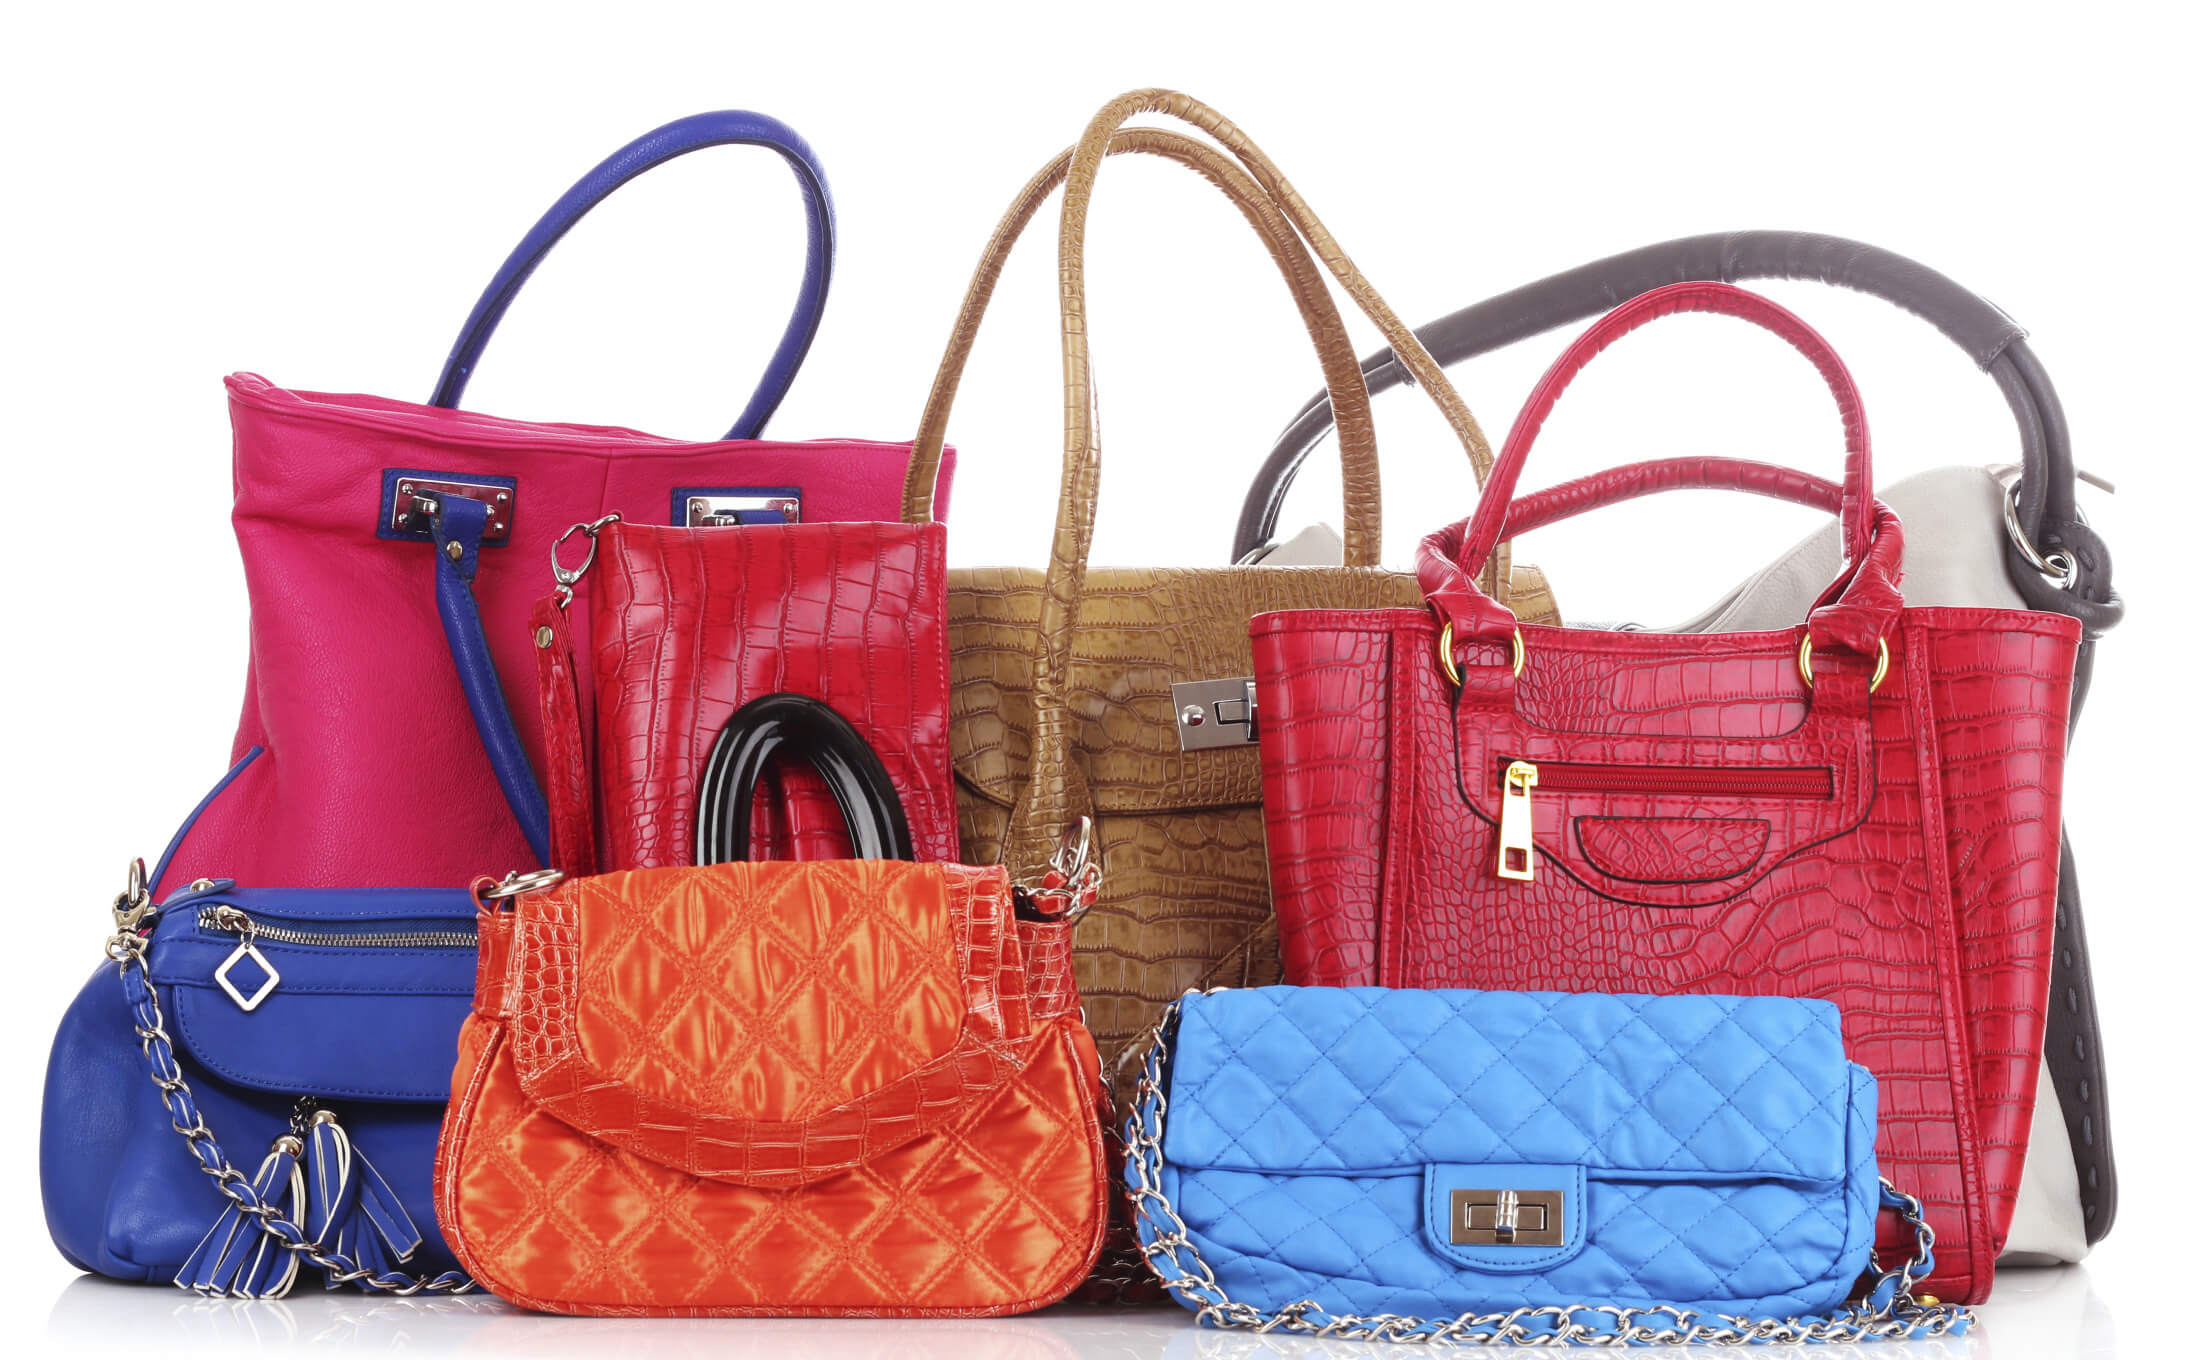 Ladies Handbags » Handbag Buying Guide » Fashion Tips